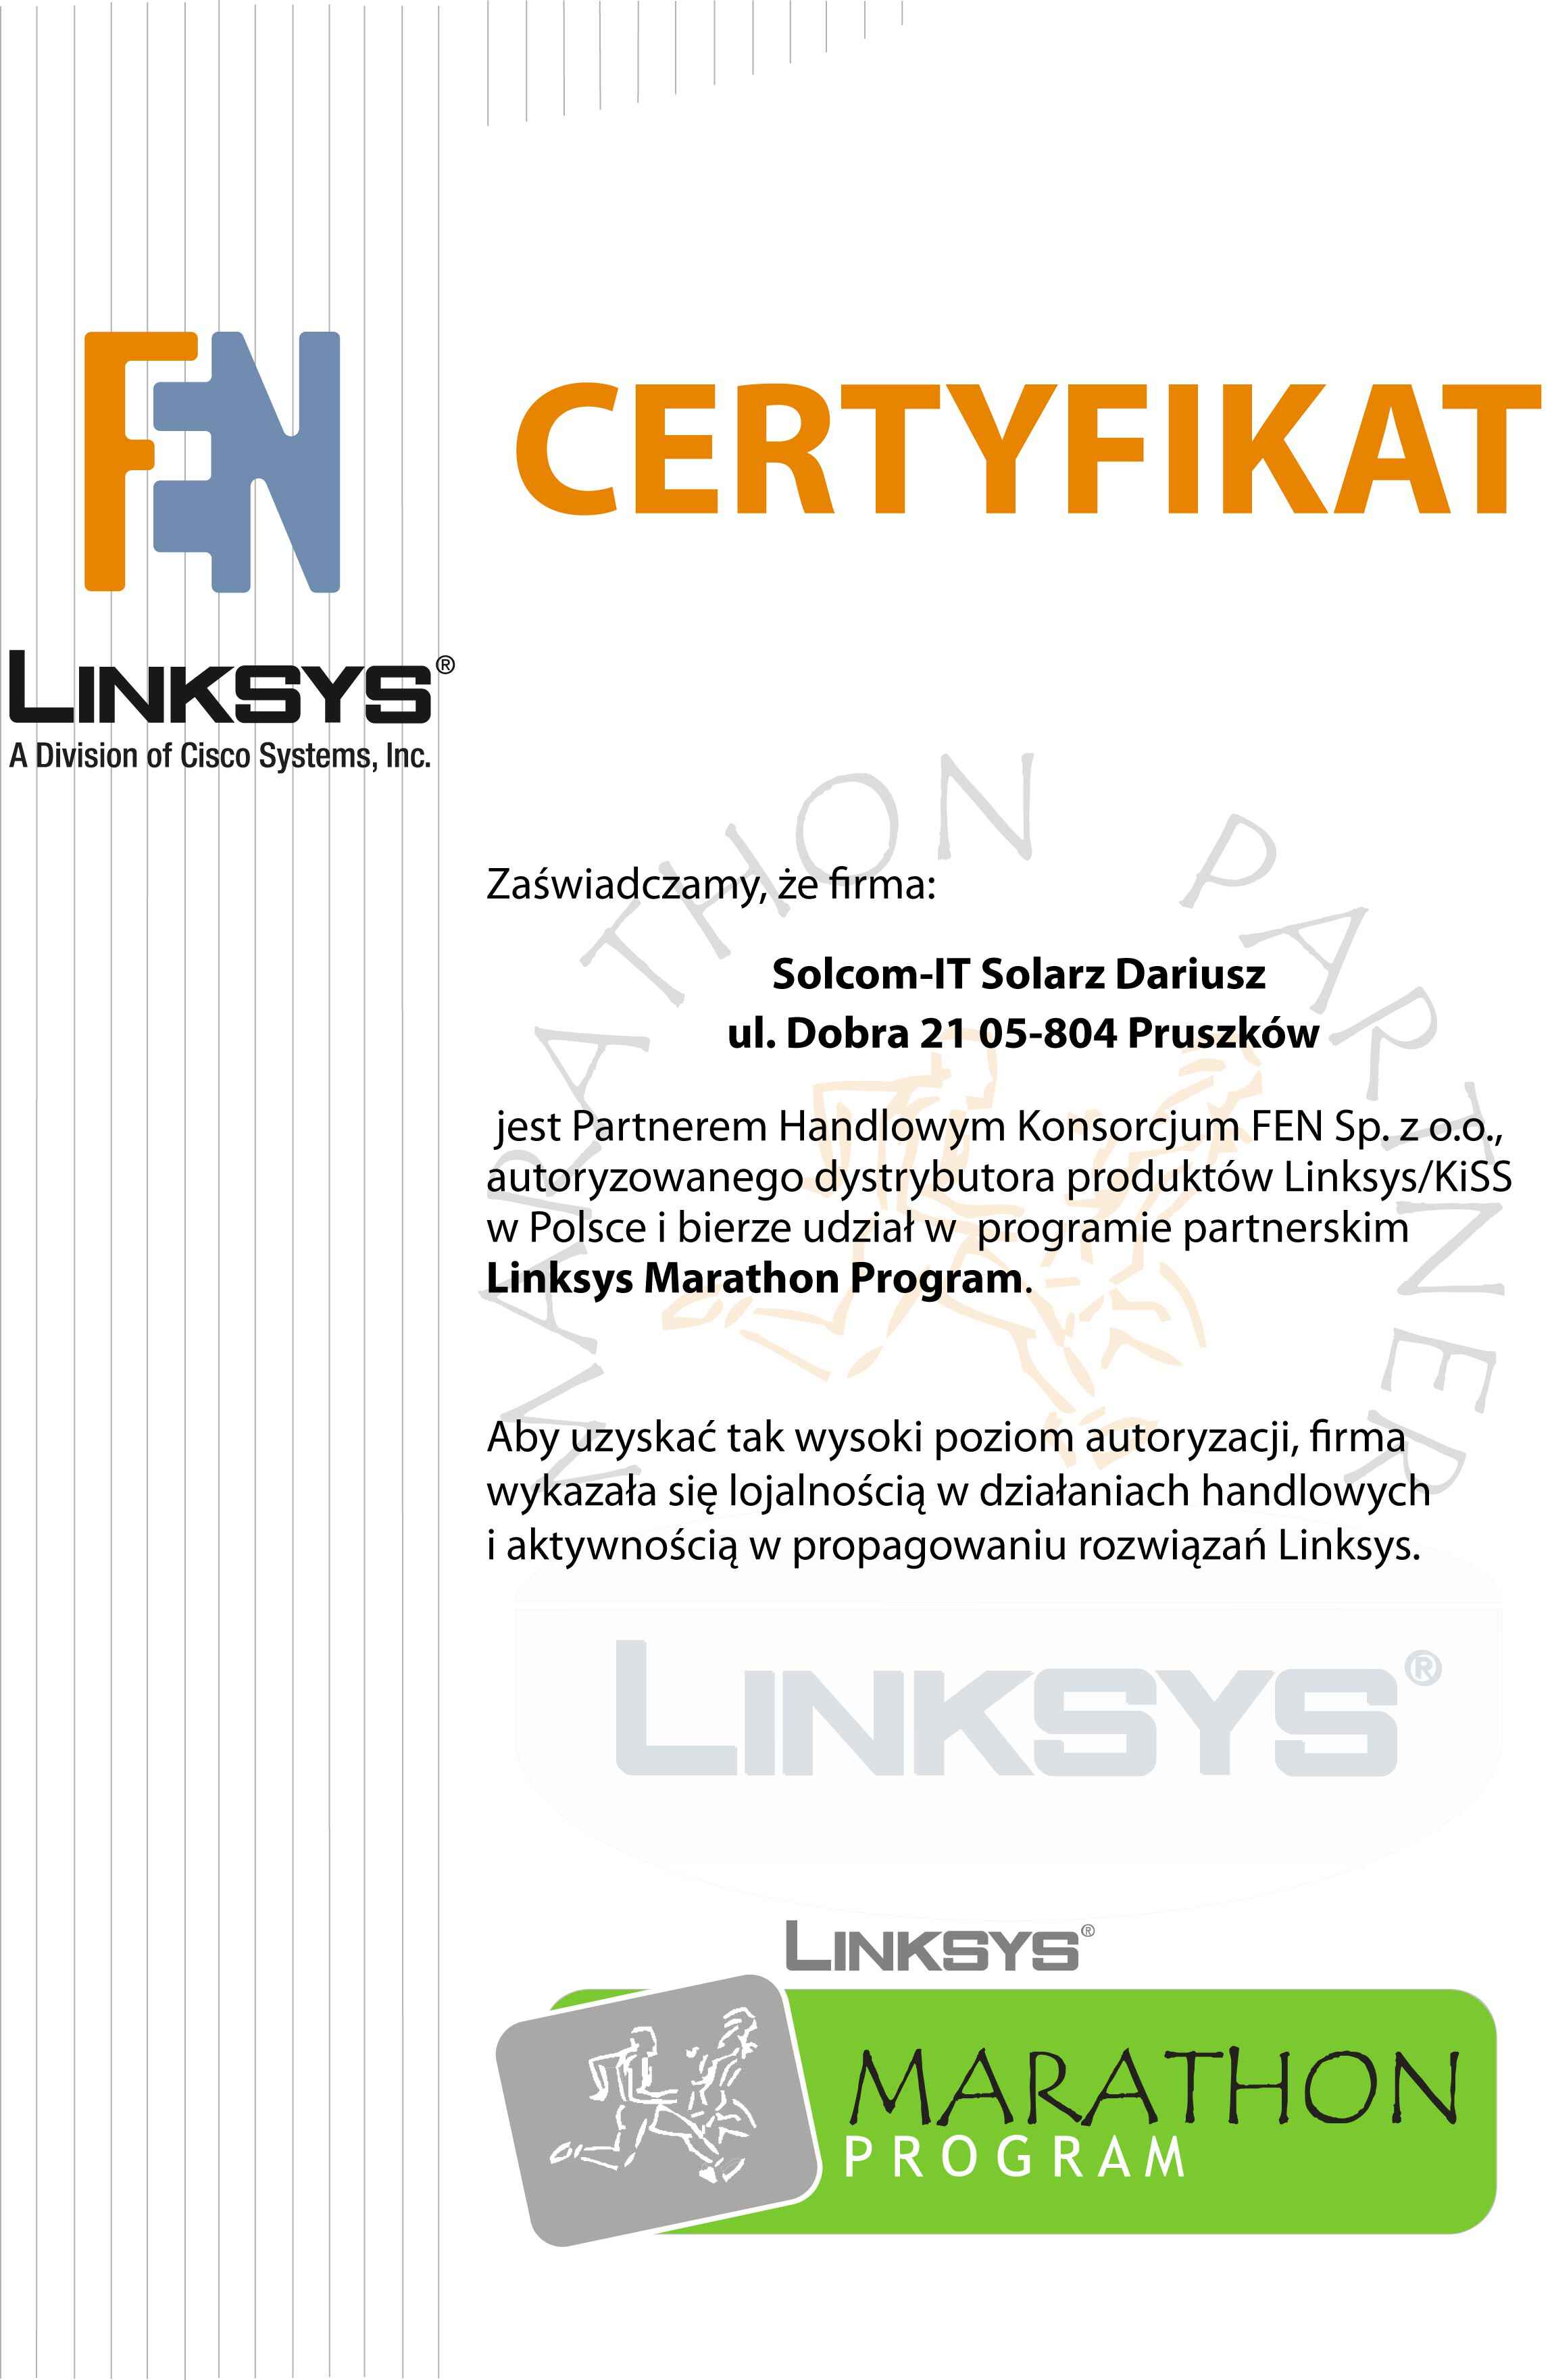 alinksys certyfikat partnera r2007.jpg